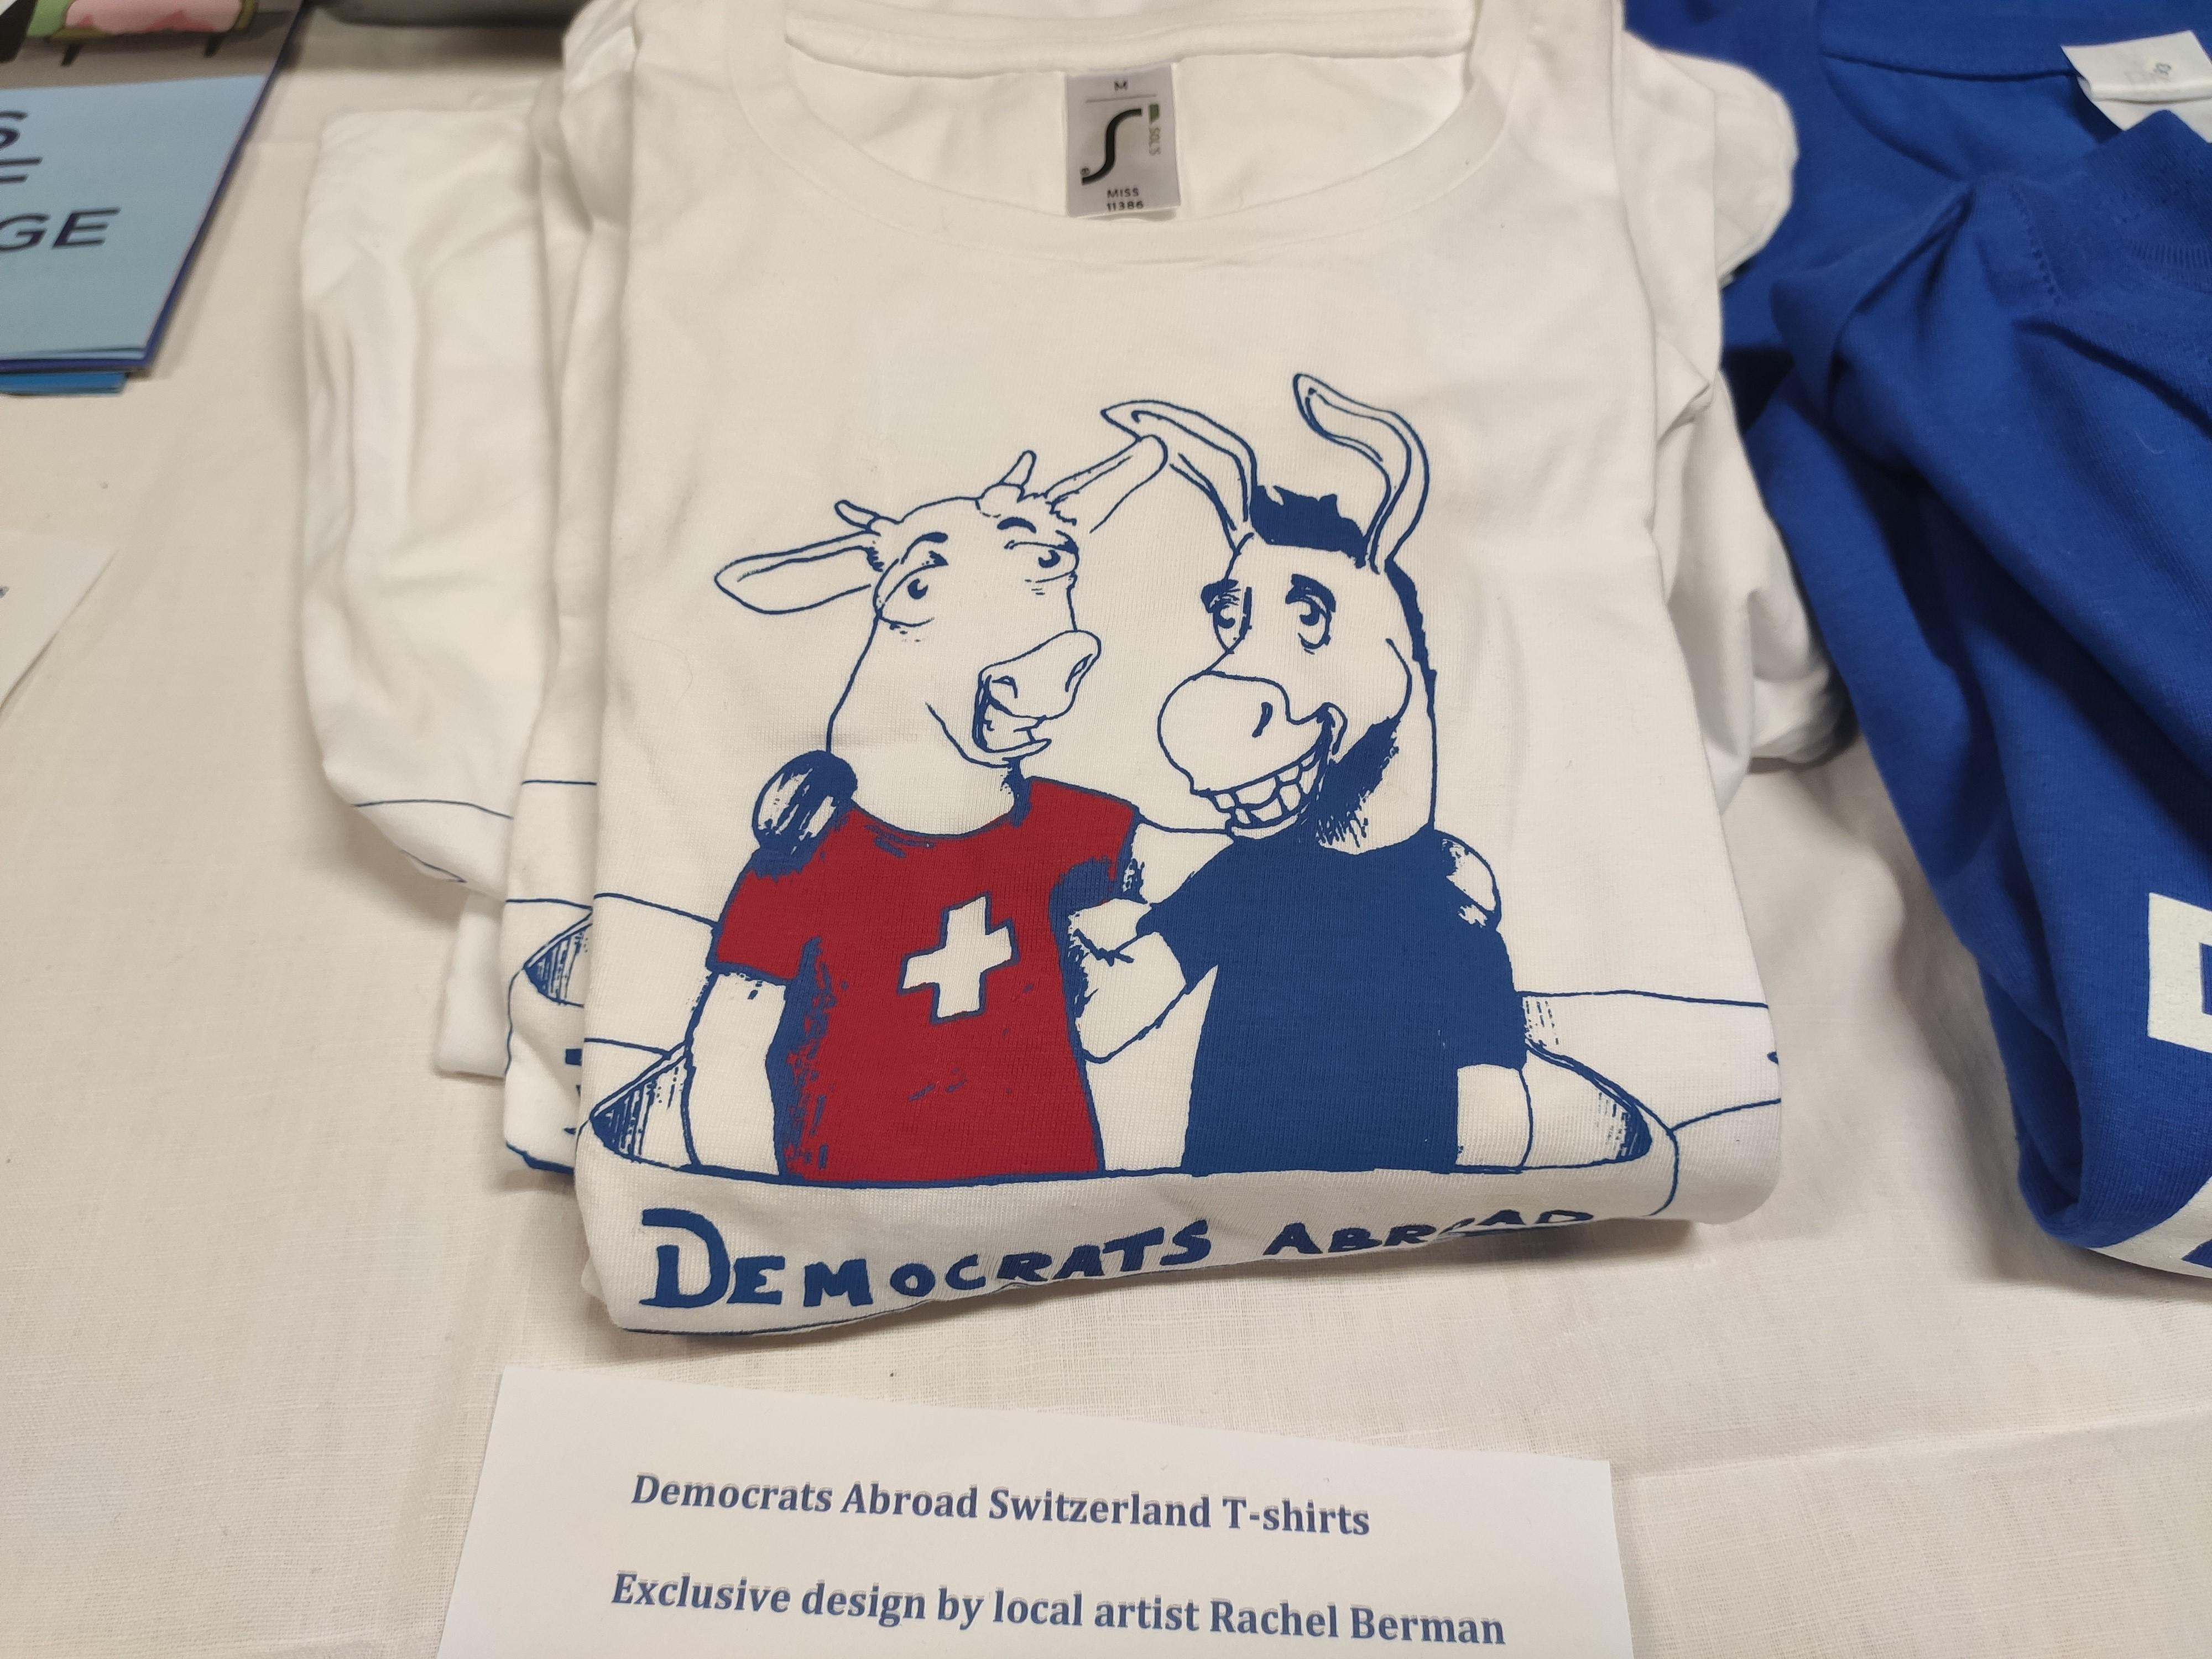 Un t-shirt des Democrats Abroad présente un âne, symbole des Démocrates, enlaçant une vache suisse. [RTS - Mouna Hussain]